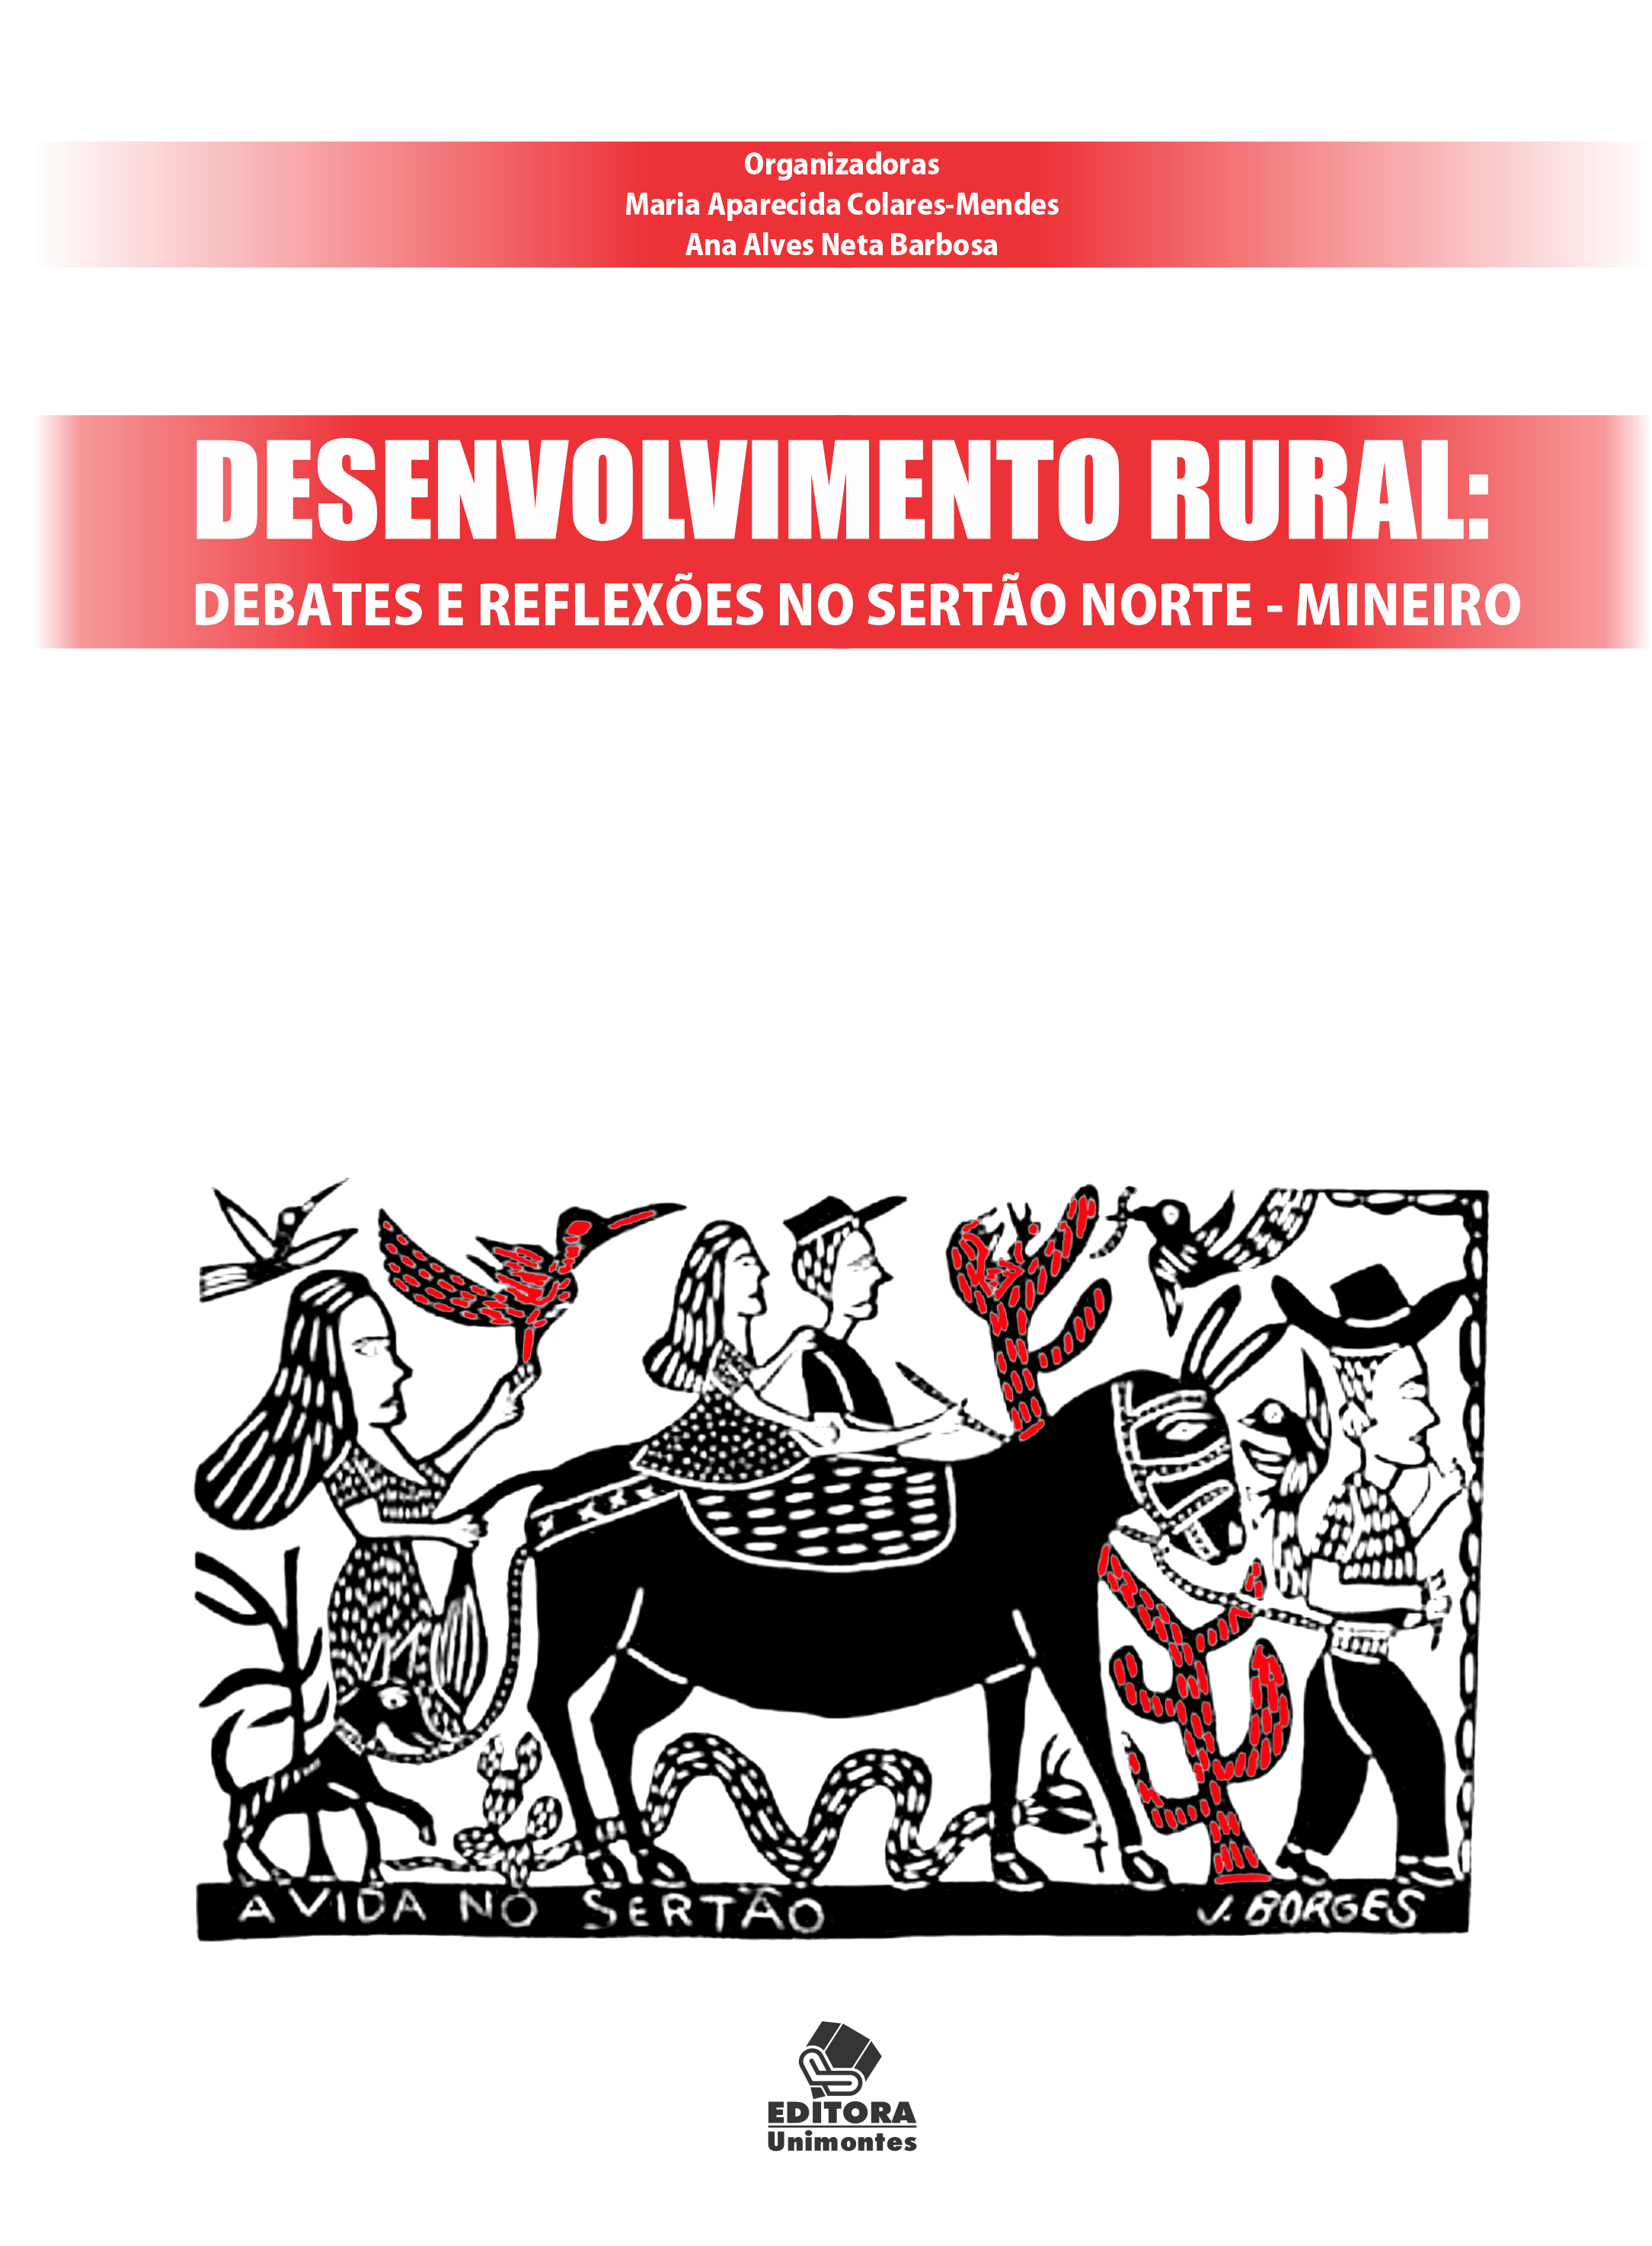 Desenvolvimento Rural: debates e reflexões no sertão norte mineiro